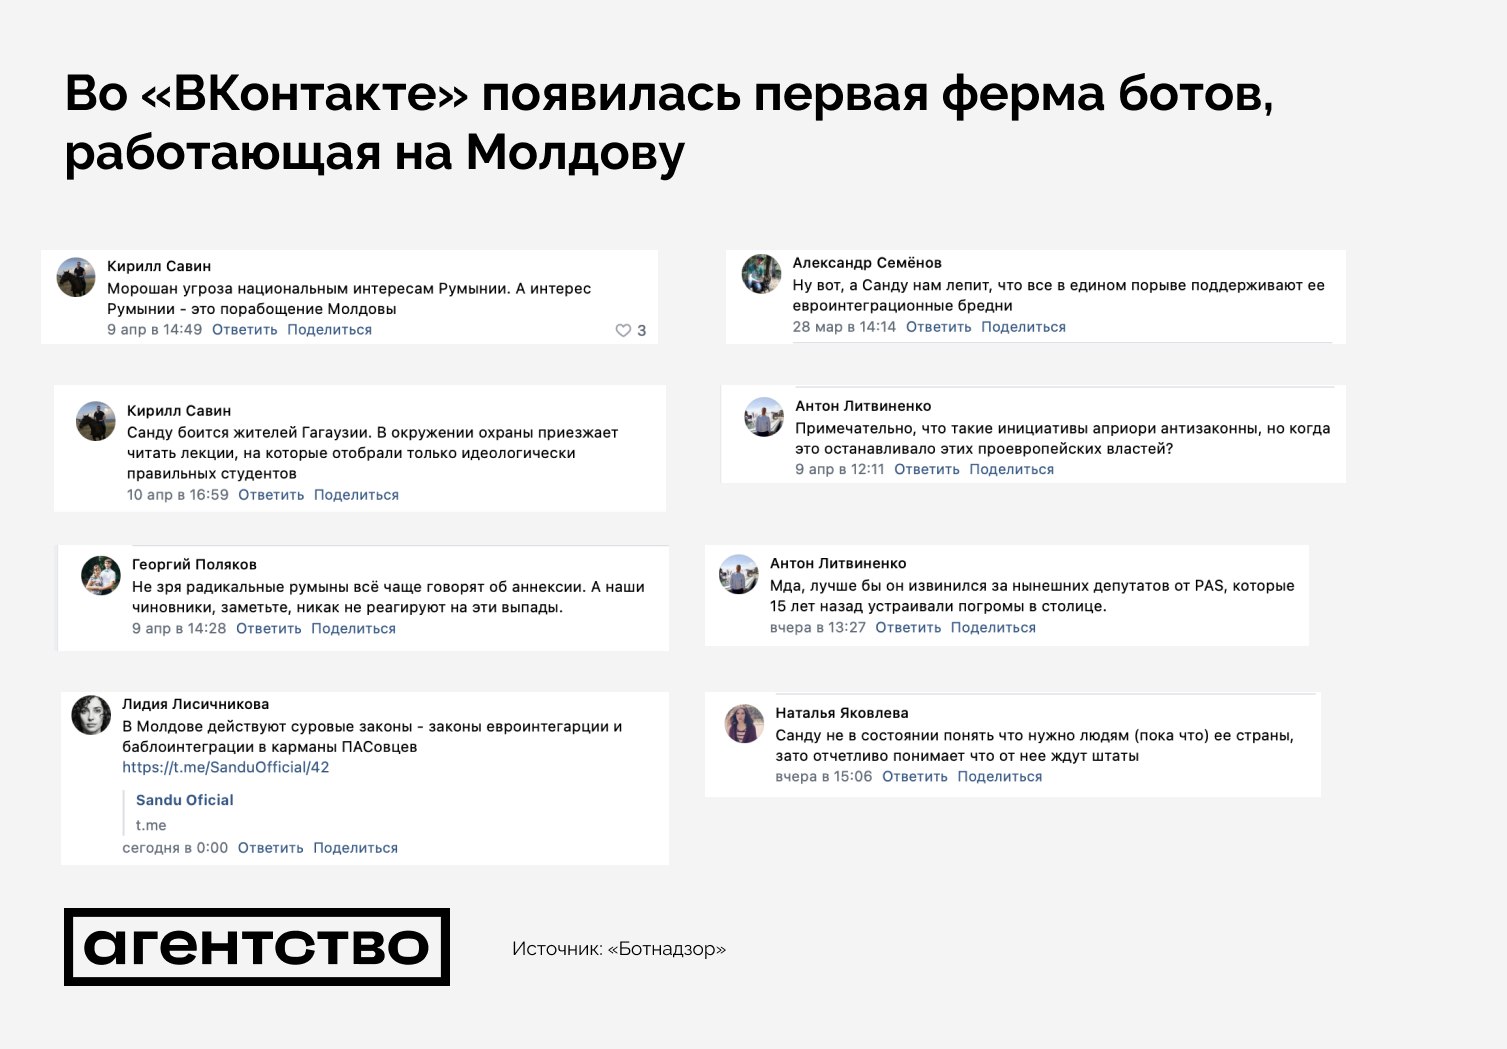 Presă: pe VKontakte a apărut o „fermă de boți”, care publică mesaje împotriva autorităților Moldovei FOTO 